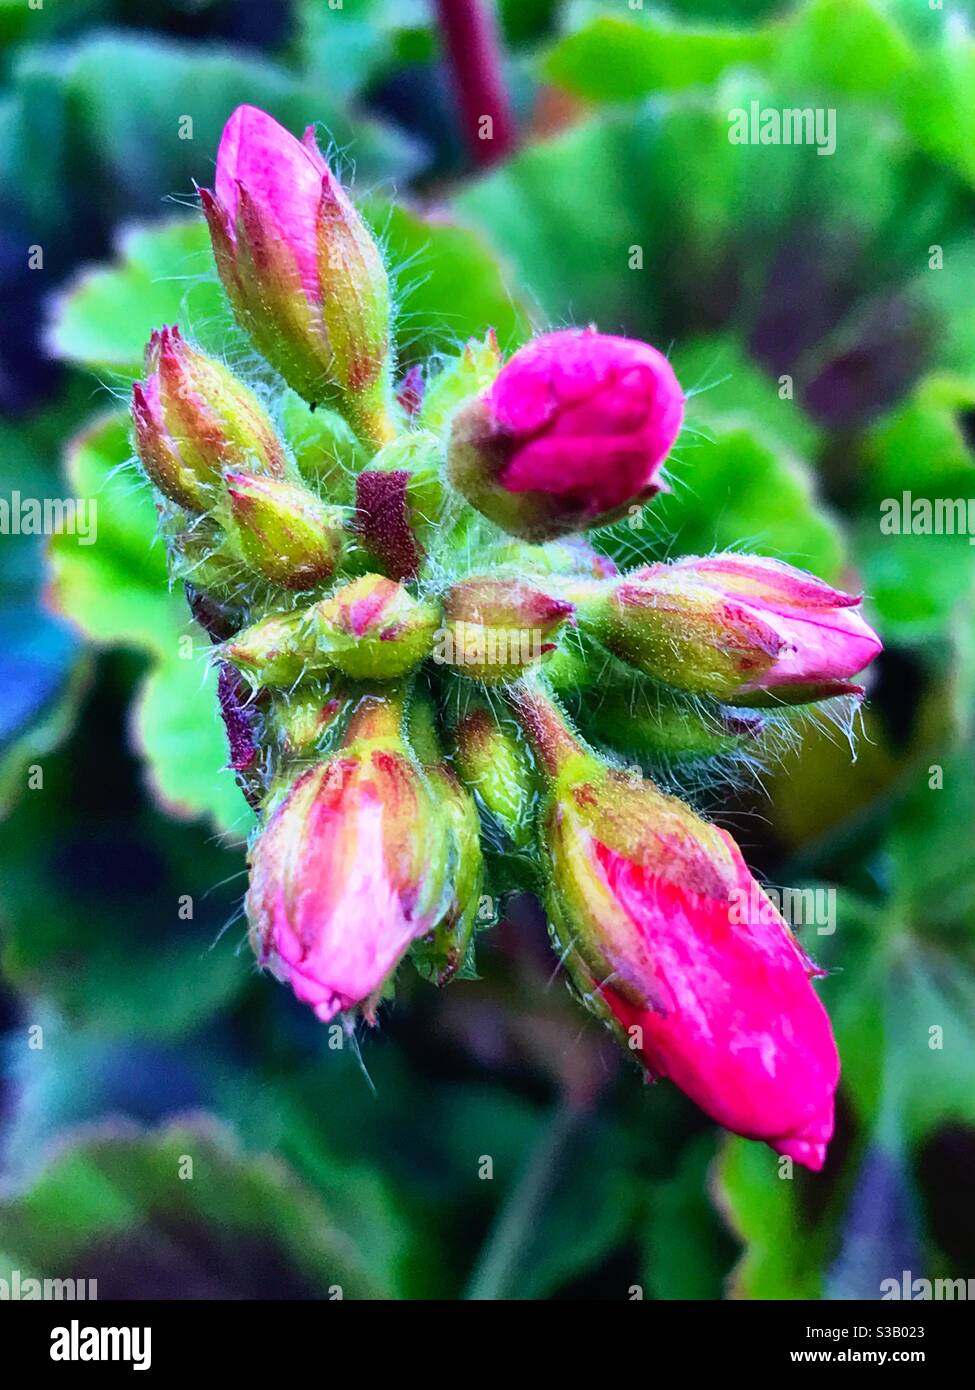 Geranium buds. Pelargonium x hortorum Stock Photo